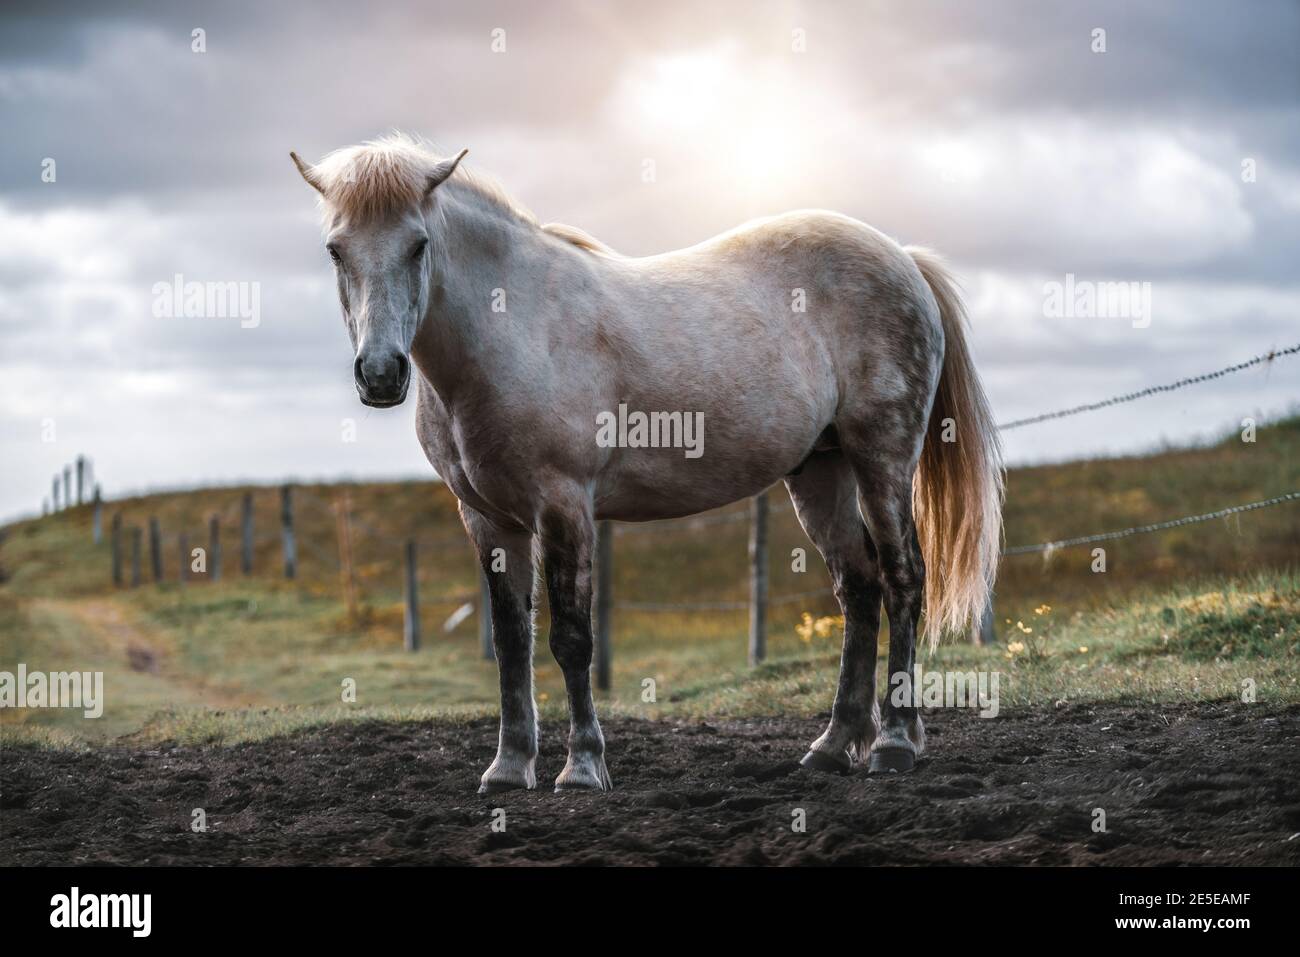 Islandpferd im Bereich der malerischen Natur Landschaft von Island. Das Islandpferd ist eine Rasse des Pferdes vor Ort in Island entwickelt als Isländische Stockfoto